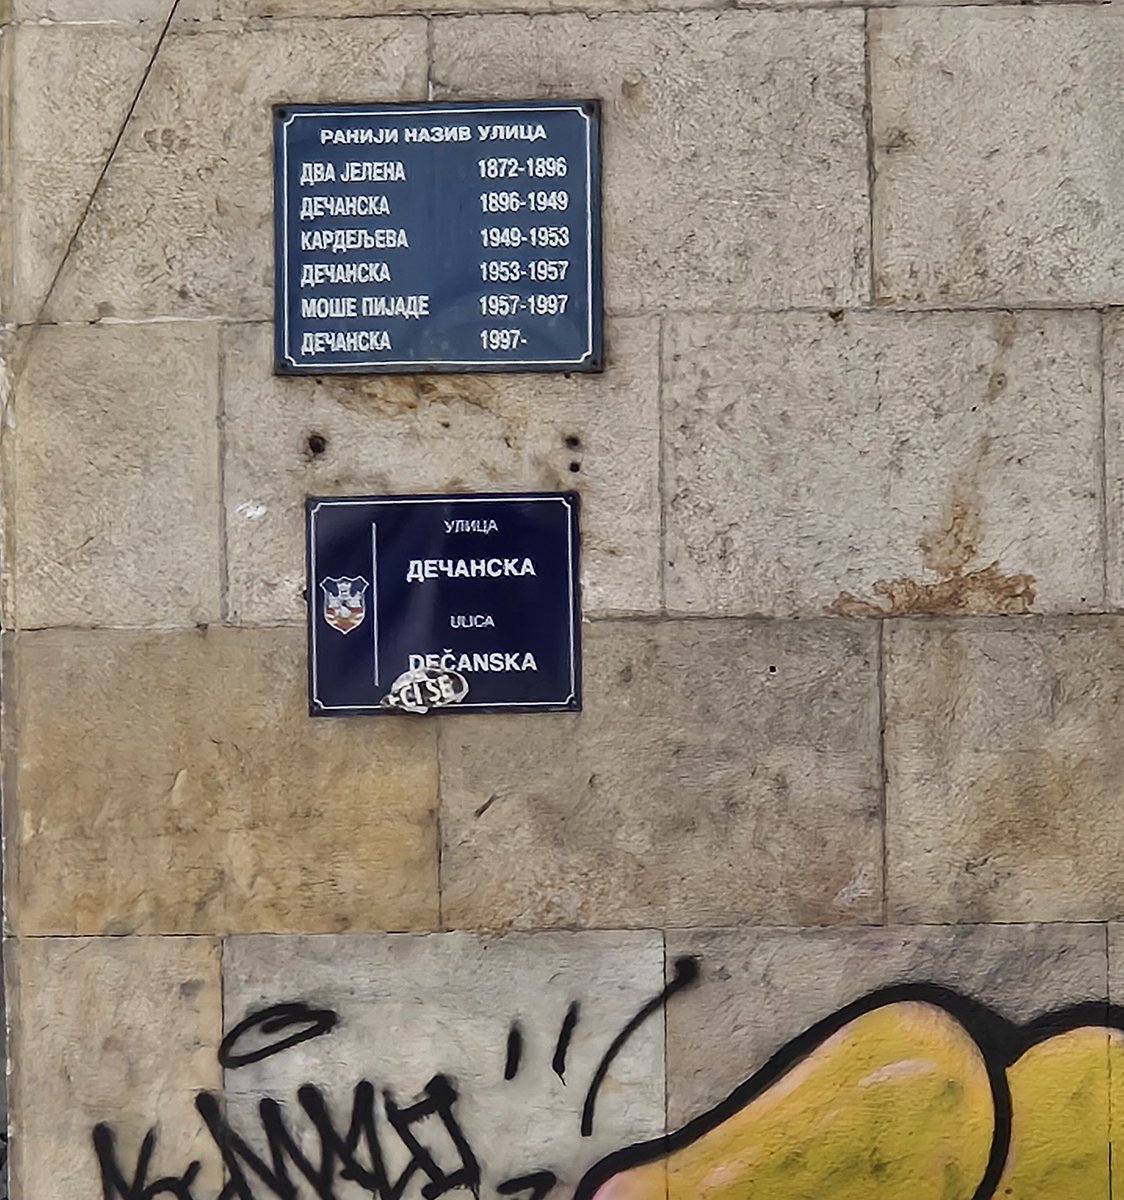 Ima li neka druga ulica u Beogradu koja bi promenila naziv 6 puta, kao Dečanska? Ona je unikatna još i po tome što u različito vreme je imala naziv po dvojici Titovih saradnika, Kardelja i Moše Pijade, a naziv Dečanska je imala čak tri puta.